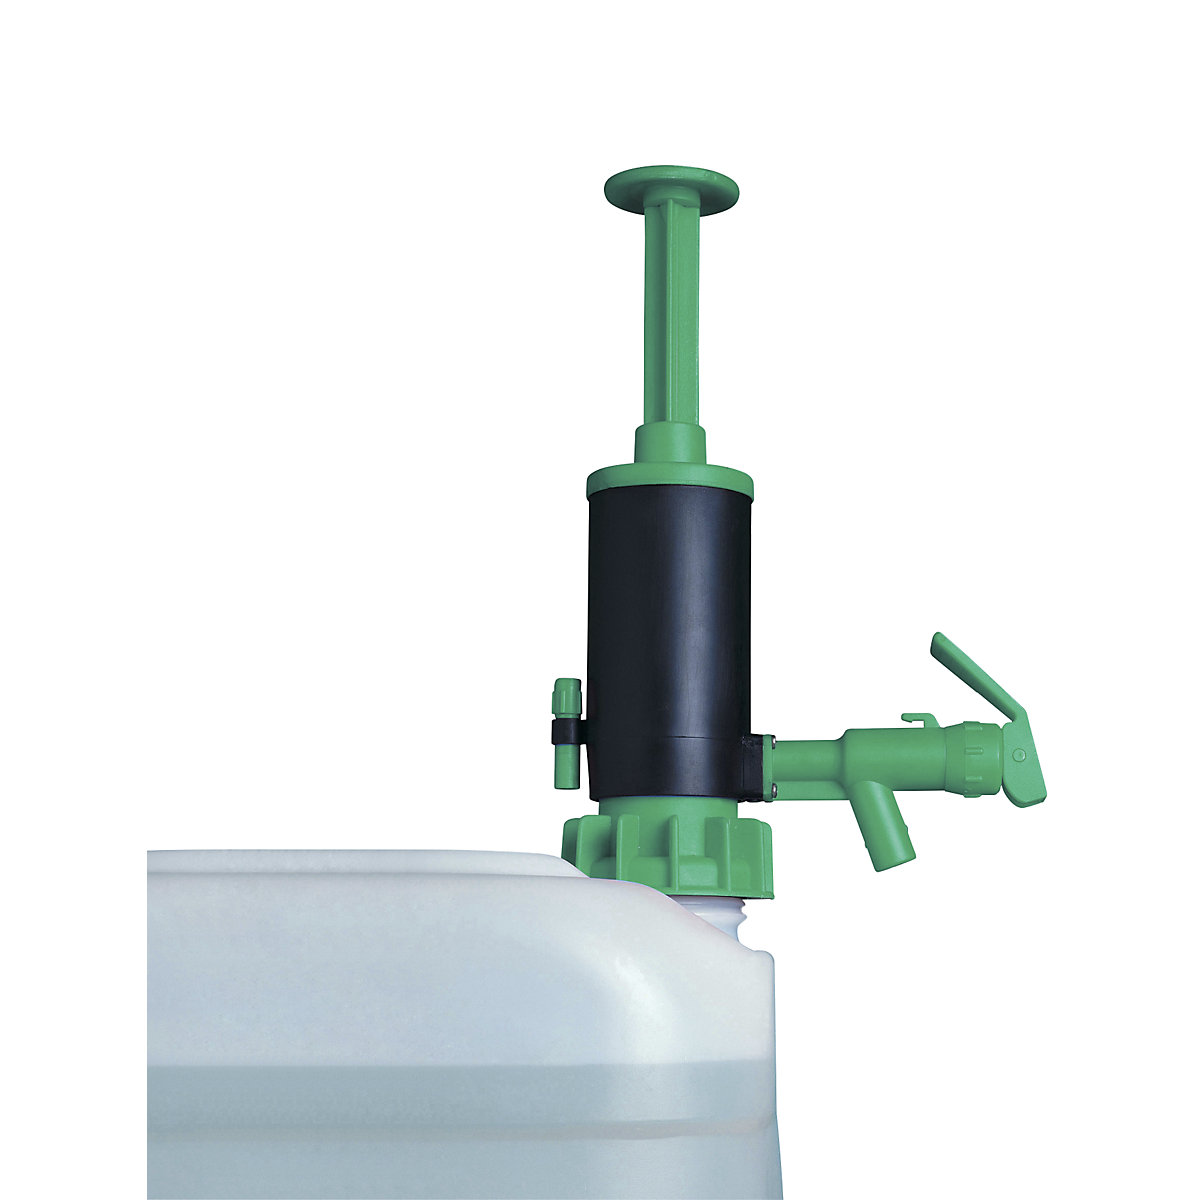 Ročna dozirna črpalka za ročke/sode – Jessberger, za kisline, zelene barve, 20 l/min